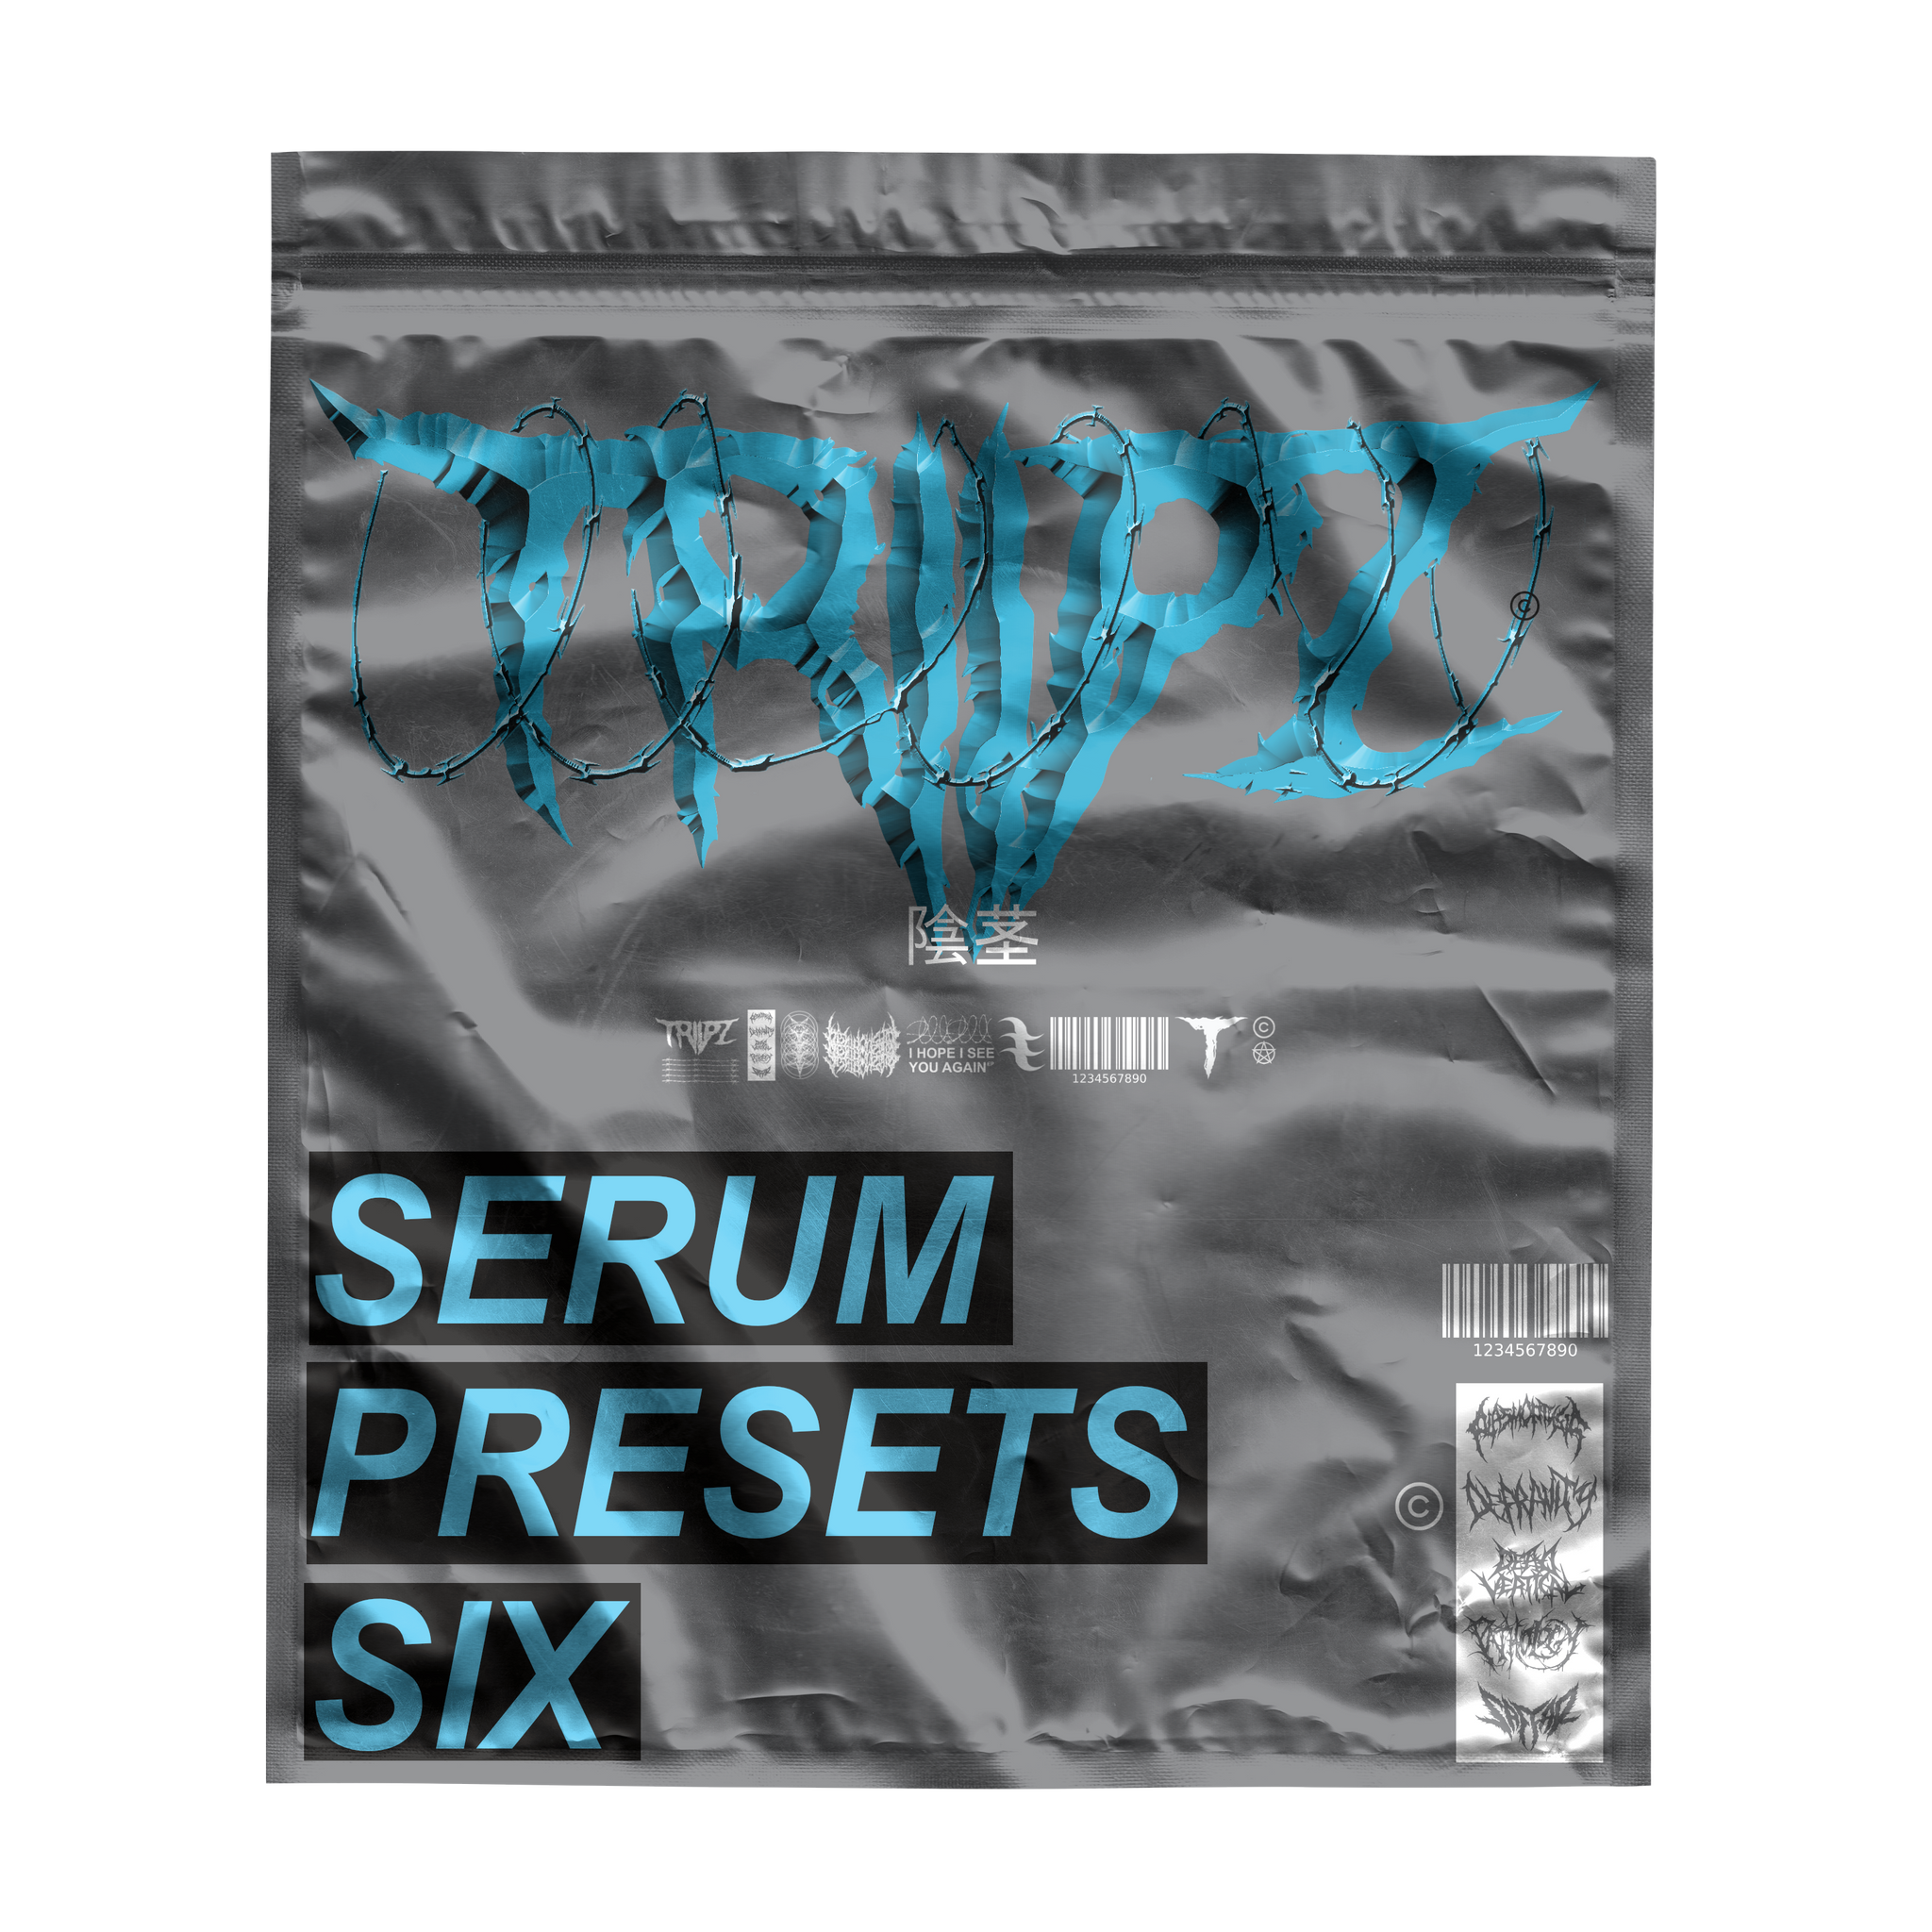 triipz serum presets 6